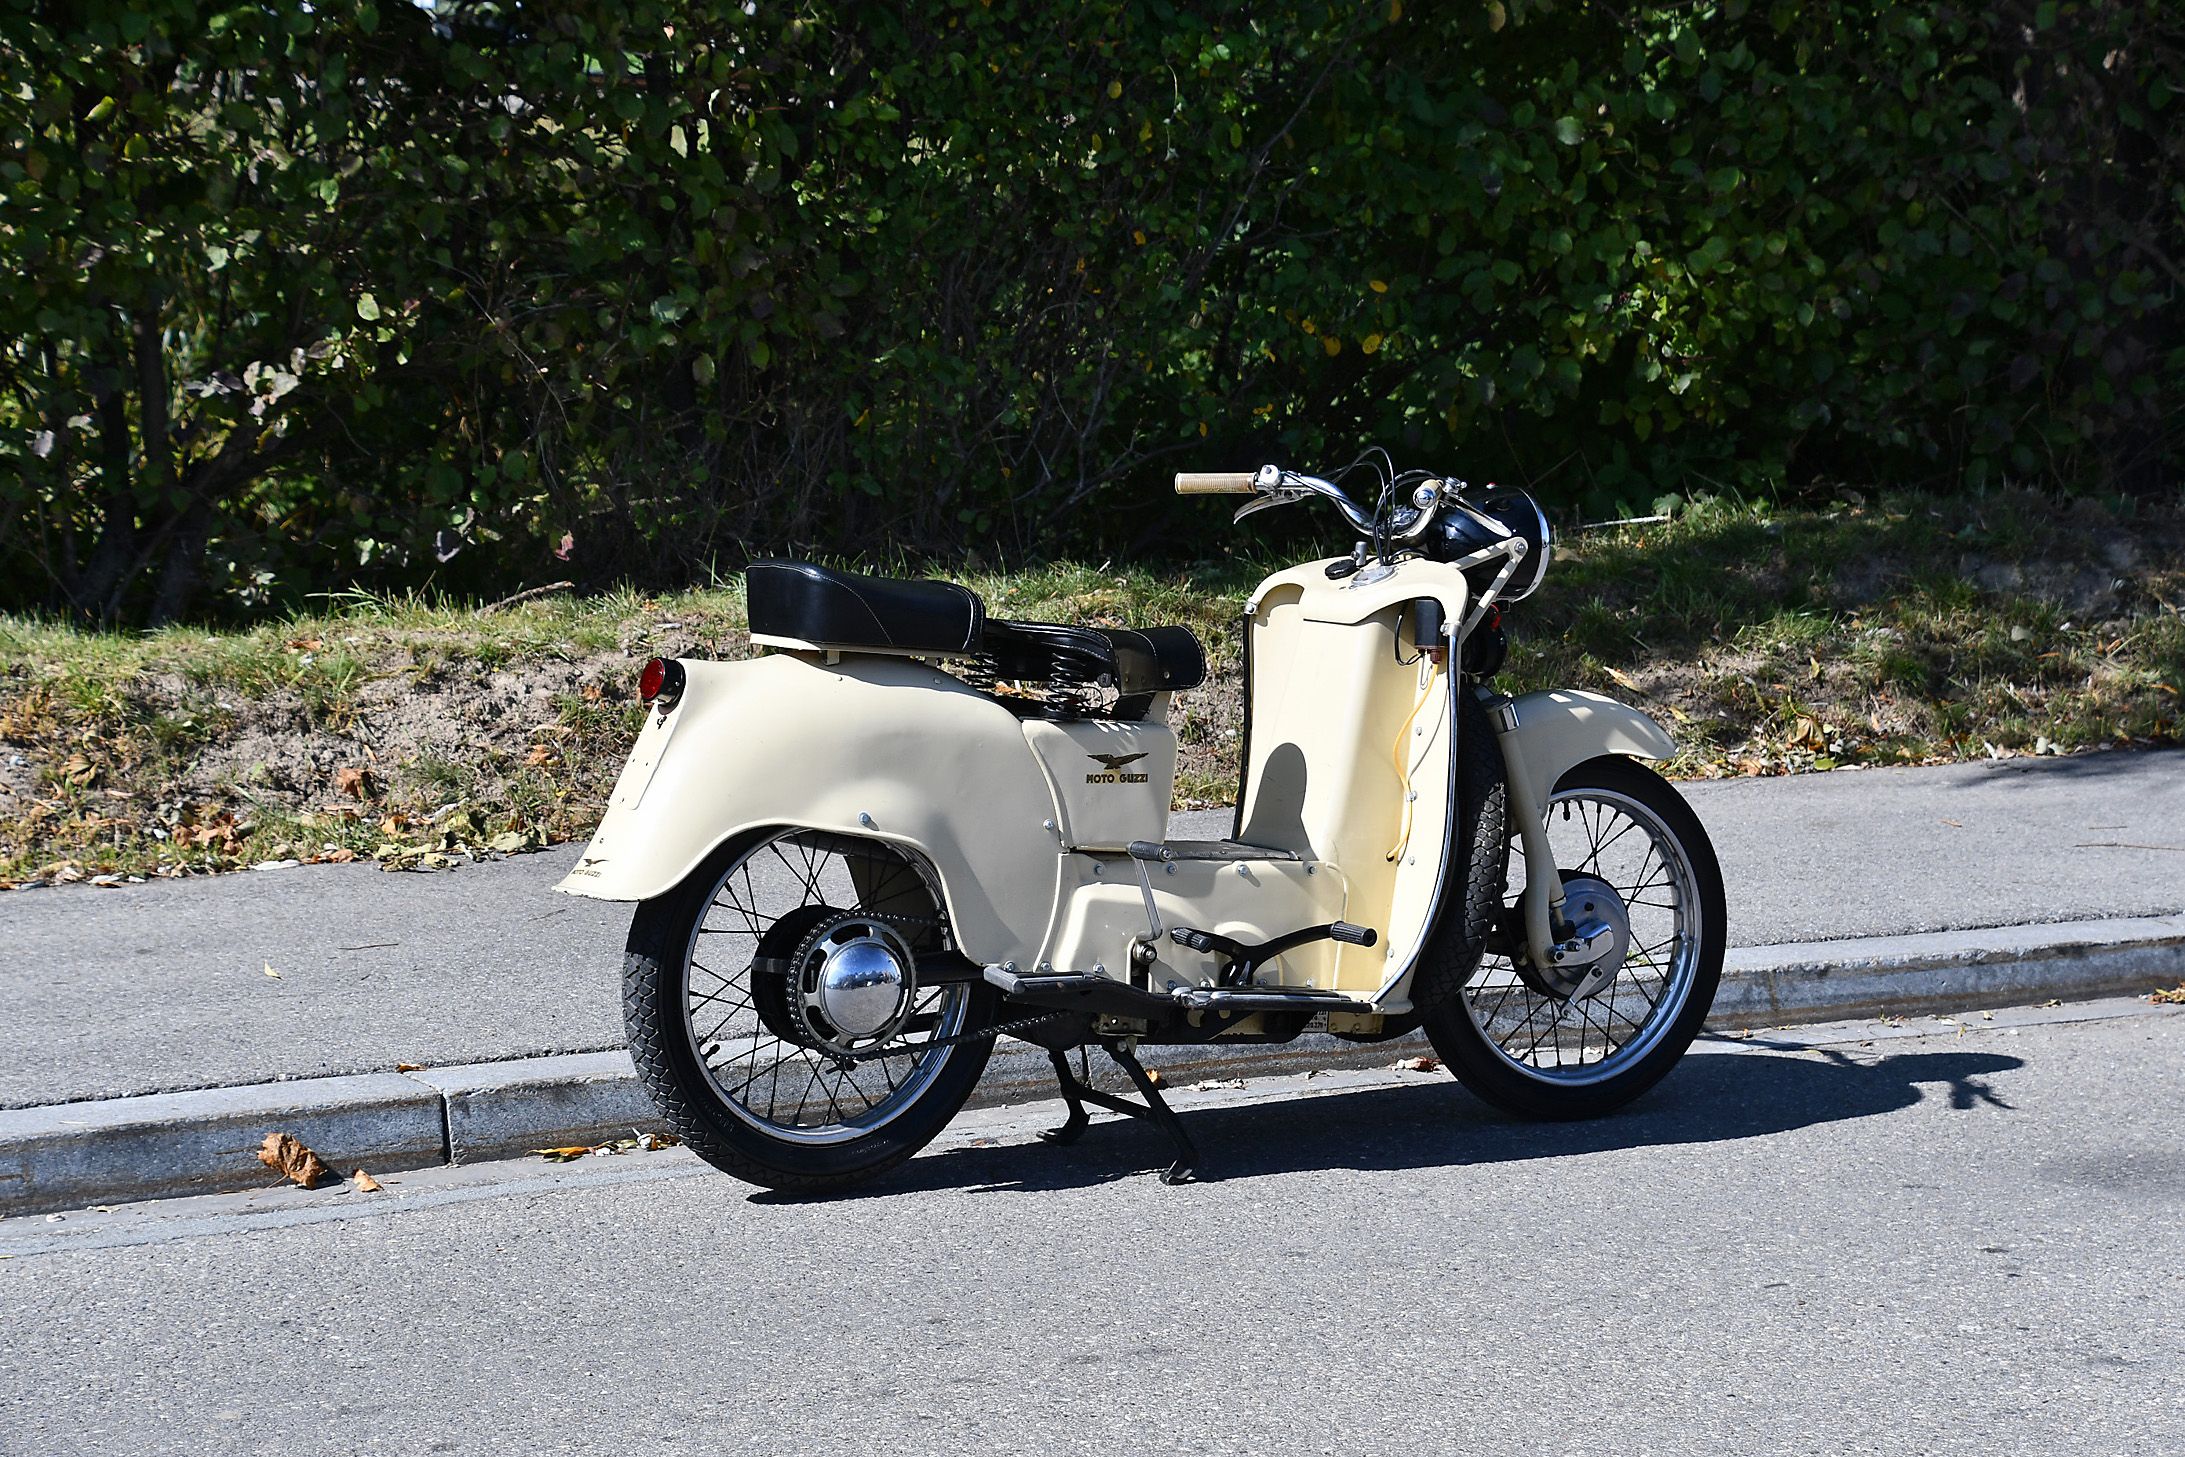 Moto Guzzi Galletto 175, 1953